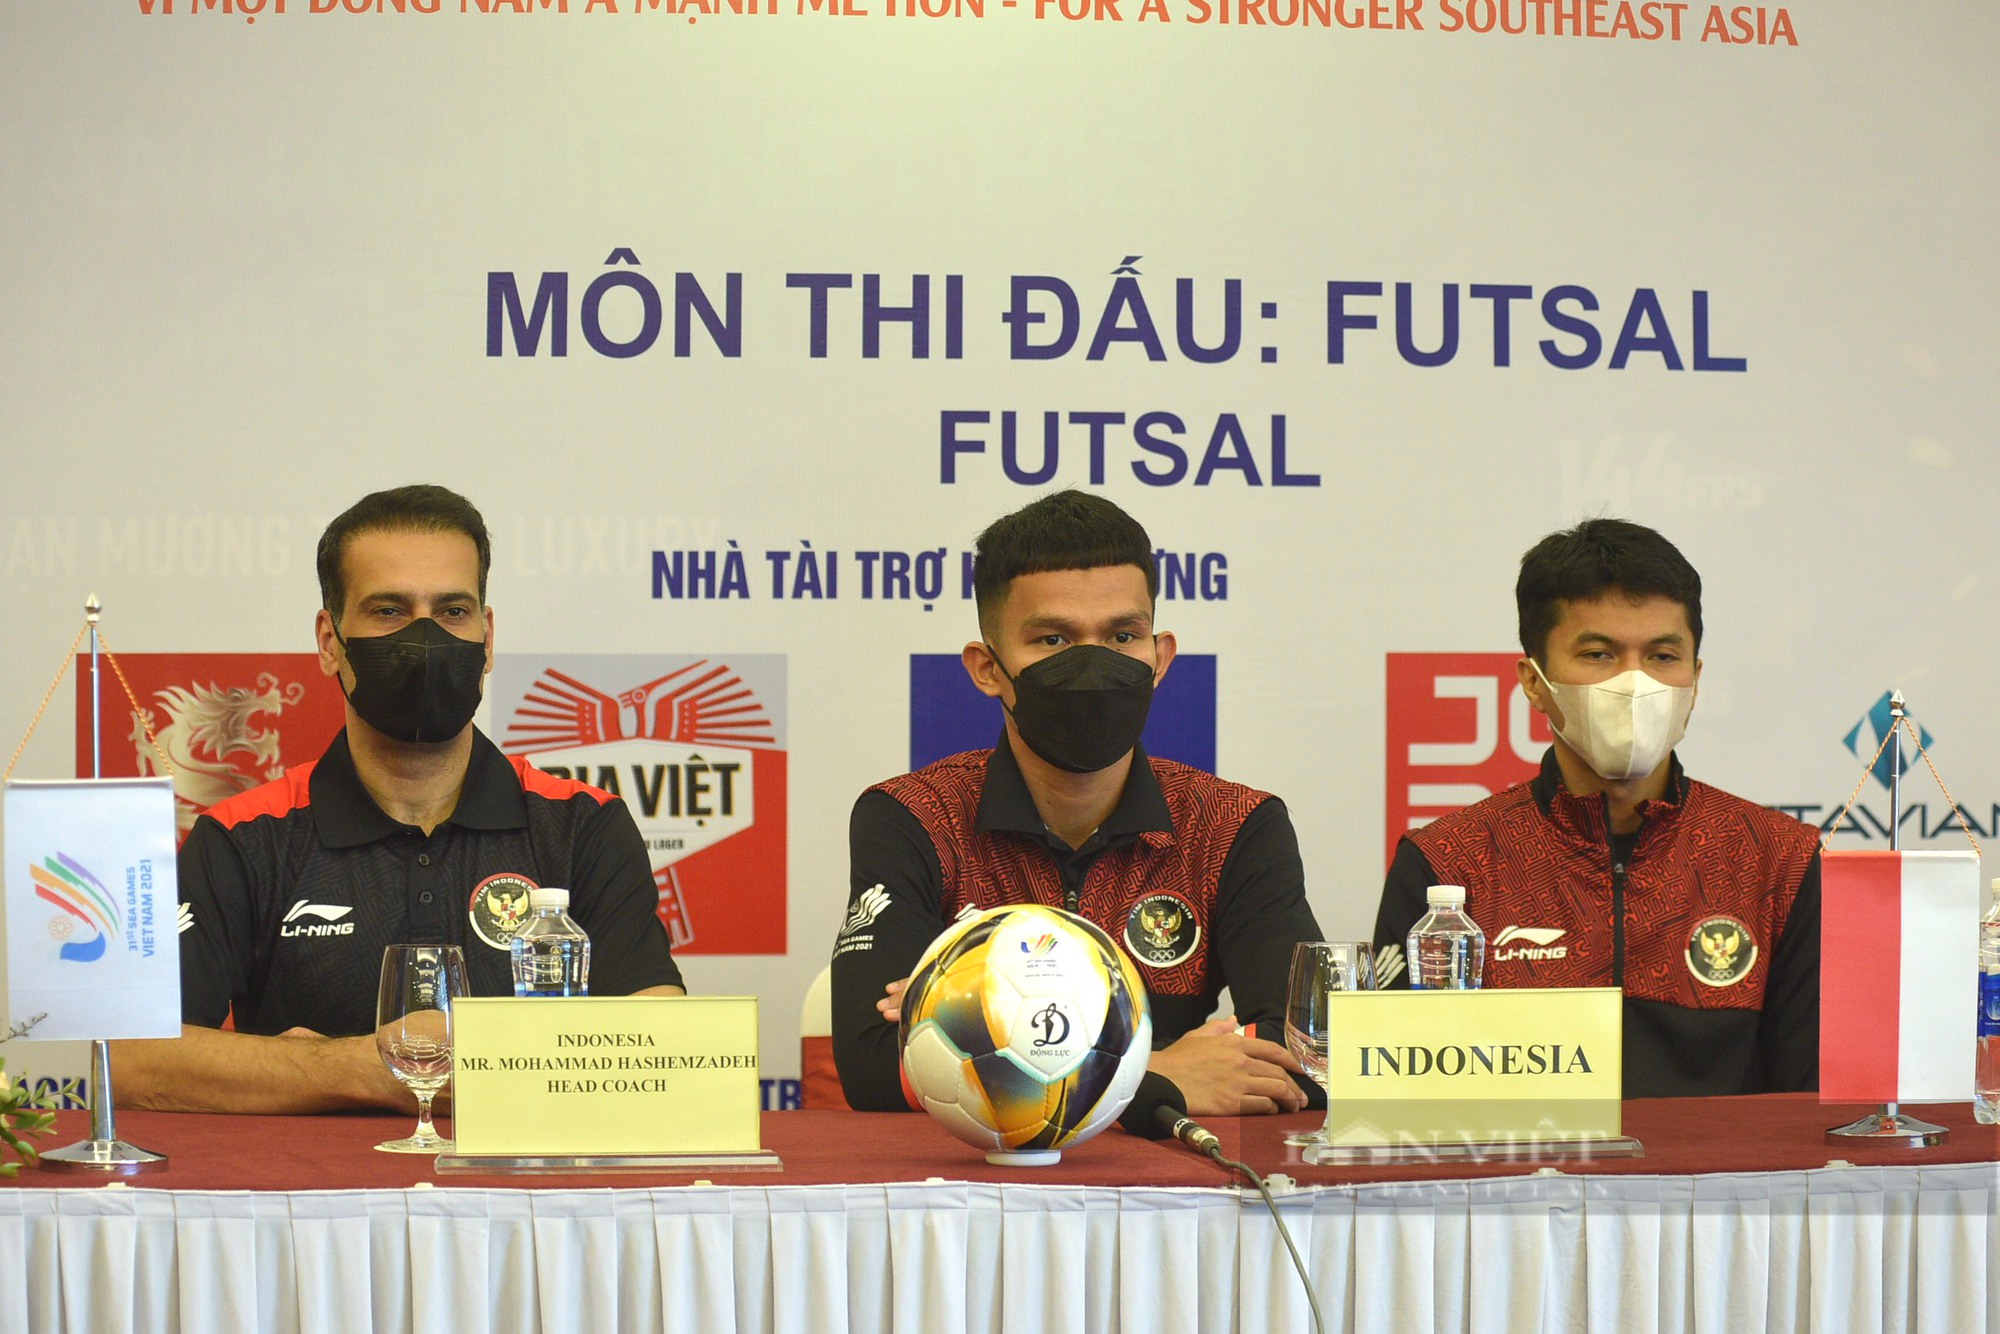 Futsal Indonesia:&quot;Chúng tôi quyết tâm giành HCV tại SEA Games 31 dù biết sẽ khó khăn&quot; - Ảnh 3.